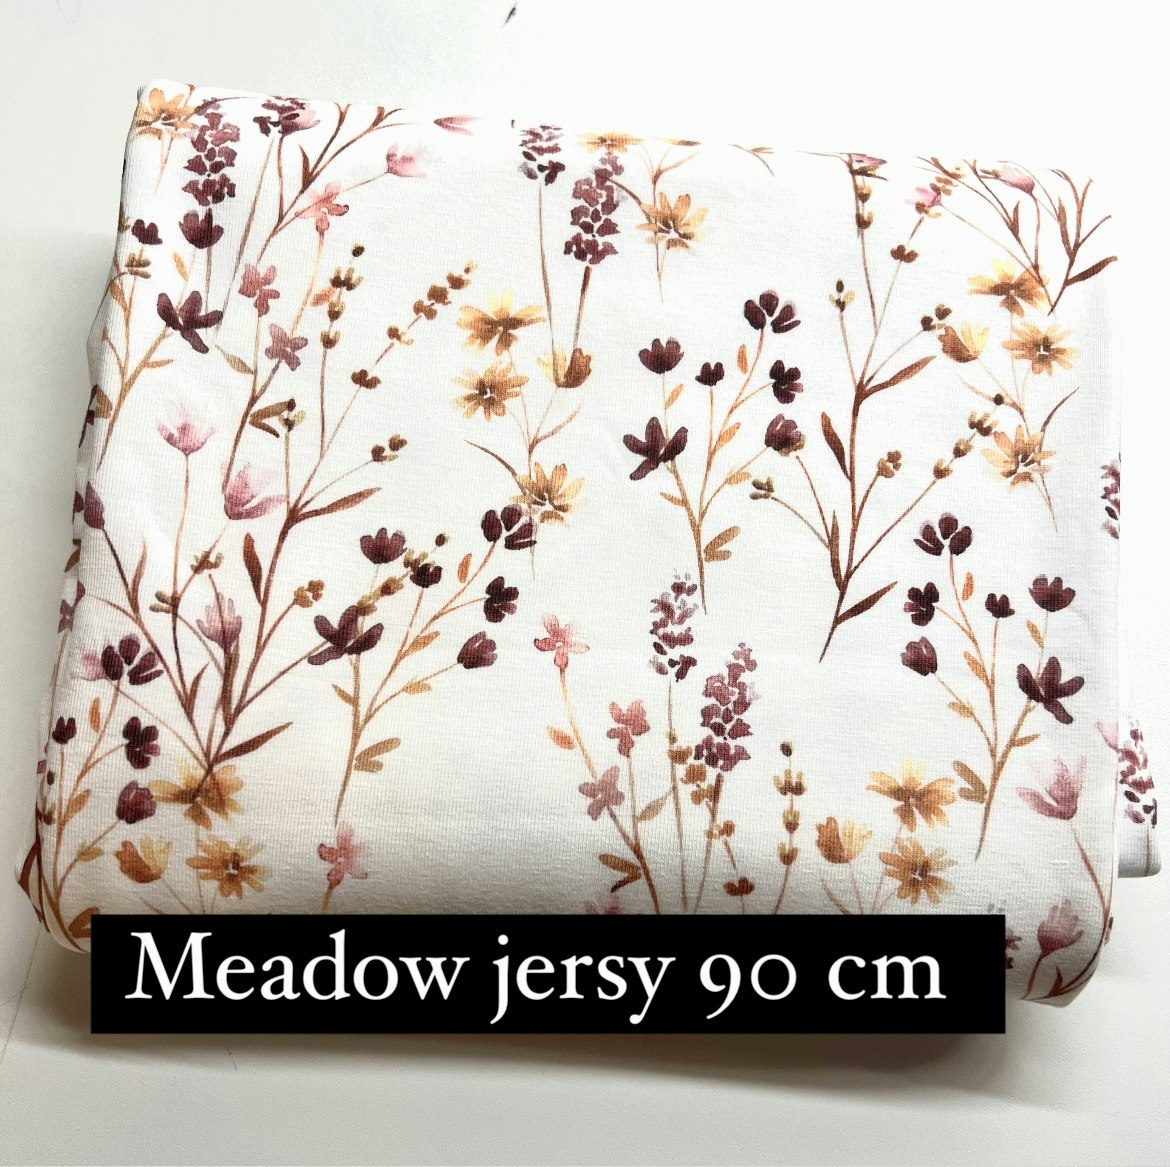 Restebit meadow jersey 90 cm